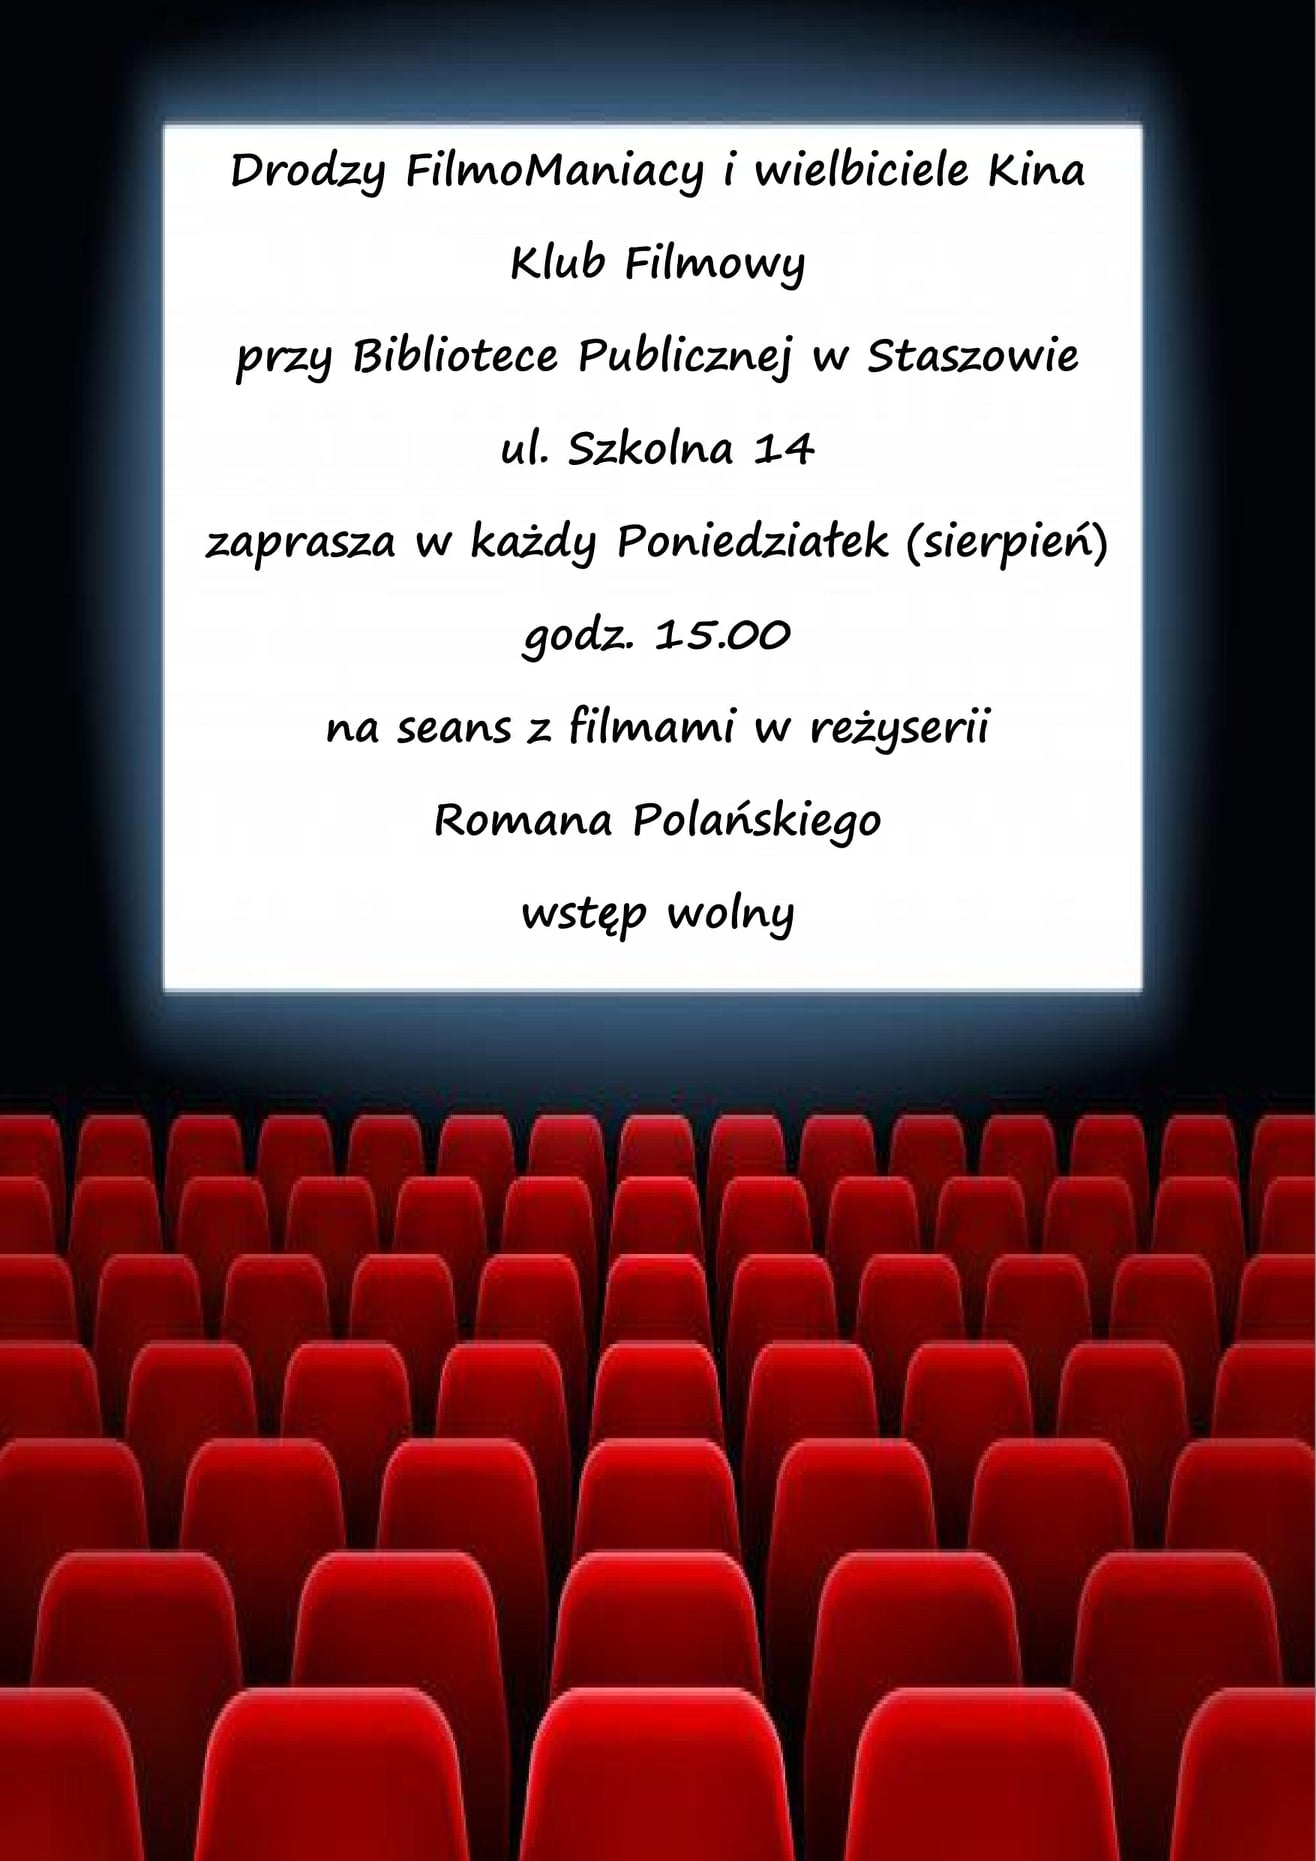 Plakat: Drodzy FilmoManiacy i wielbiciele kina  Klub Filmowy przy Bibliotece Publicznej w Staszowie zaprasza w każdy poniedziałek (sierpień) o godz. 15:00 na seans z filmami Romana Polańskiego  Wstęp wolny!